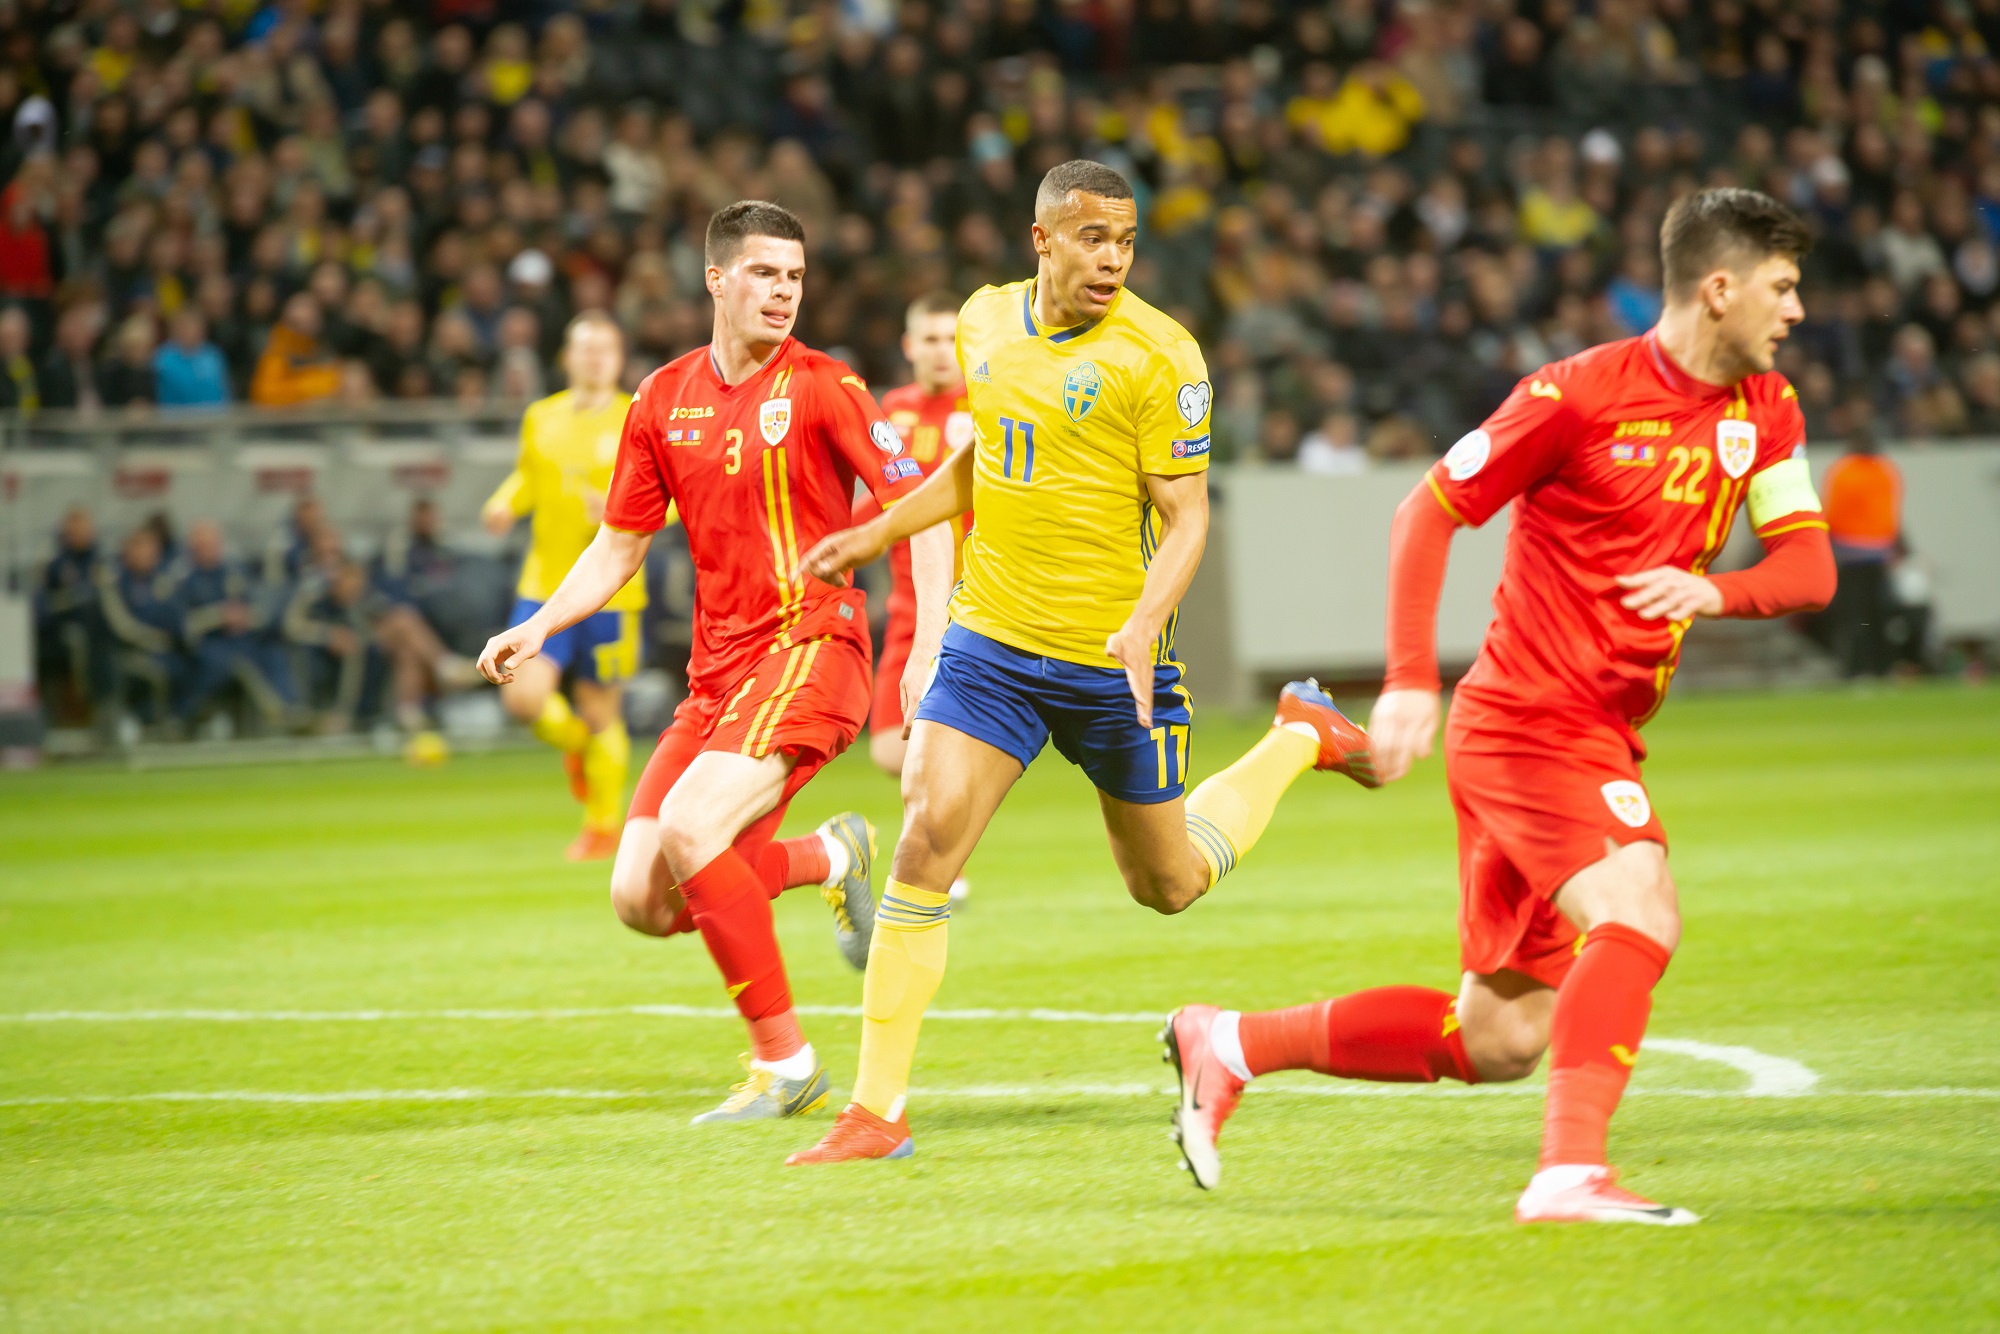 Ρουμανία - Σουηδία 15/11/2019 Euro 2020 προγνωστικά ανάλυση στοίχημα